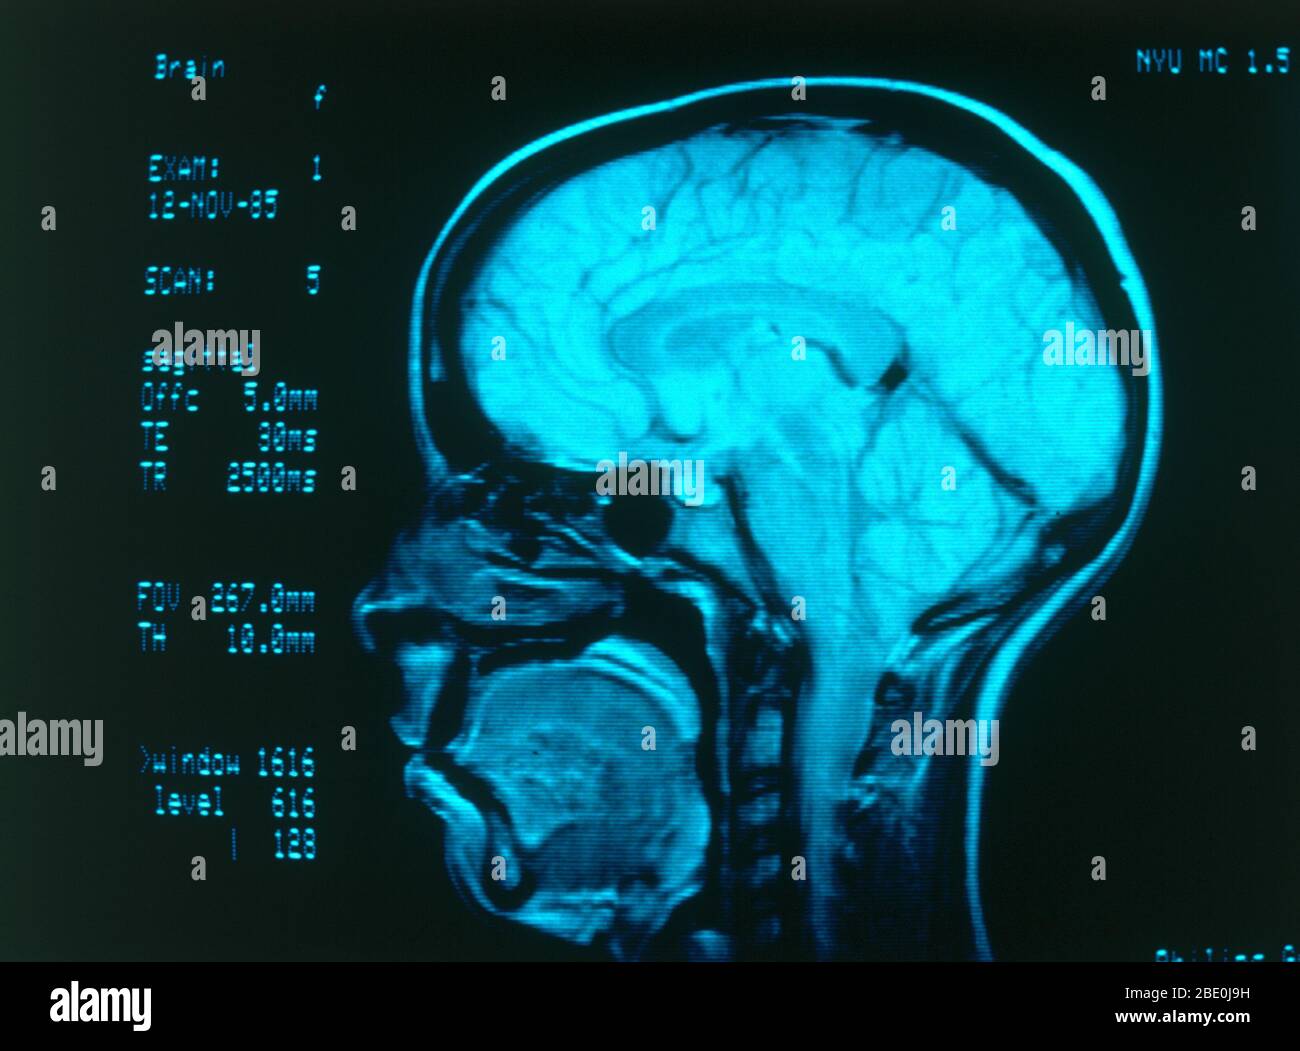 Angiografia radiologica medica che mostra vasi sanguigni normali nel cervello. Foto Stock